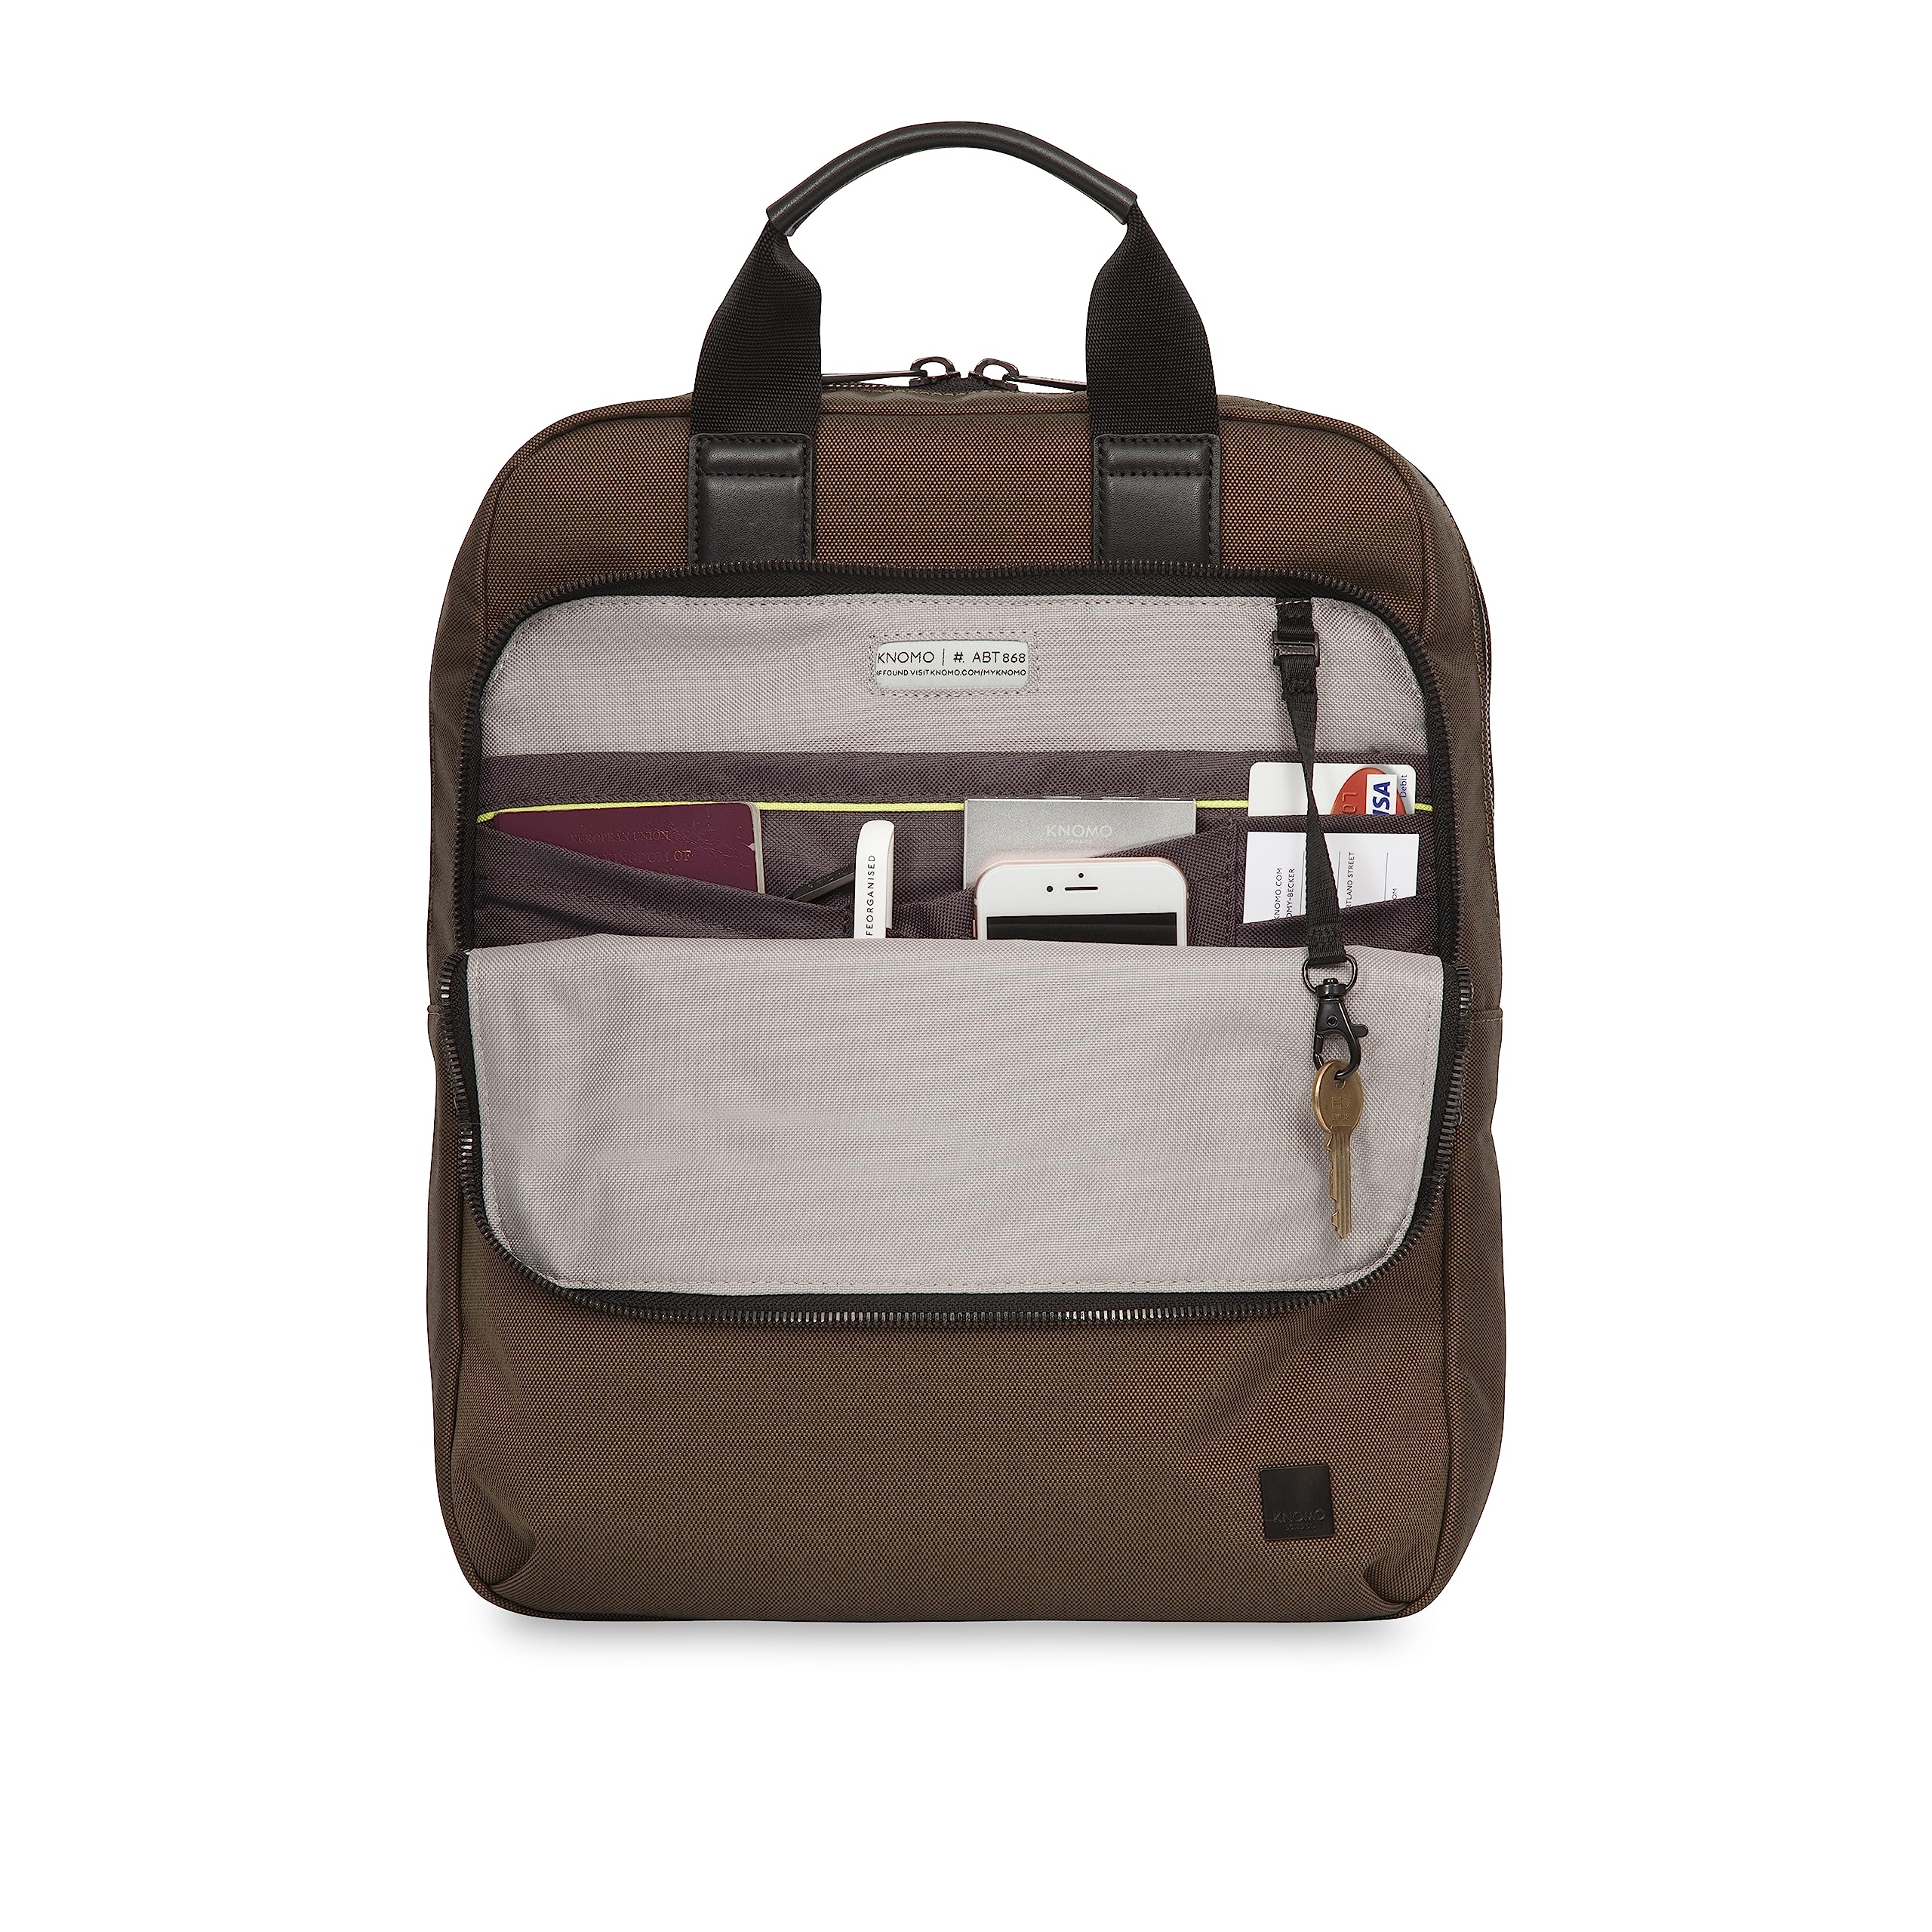 送料無料KNOMO James 16 inch Laptop Briefcase Men Waterproof Backpack Slim Travel Rucksack Business Casual Daypack Dark G